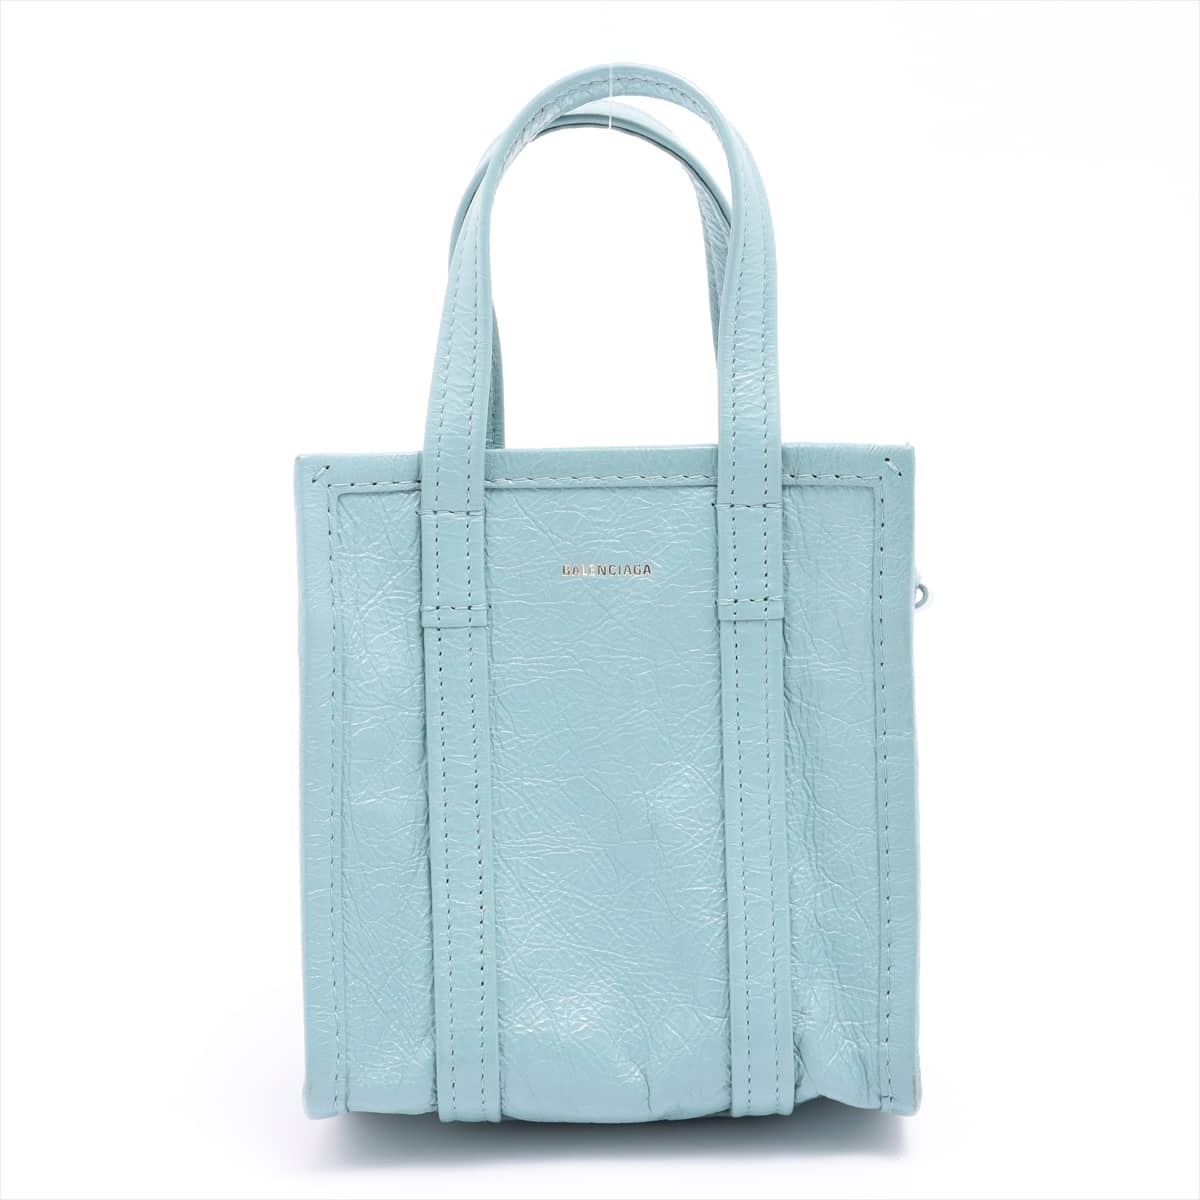 Balenciaga Bazal shopper XXS Leather 2way handbag Blue 513988